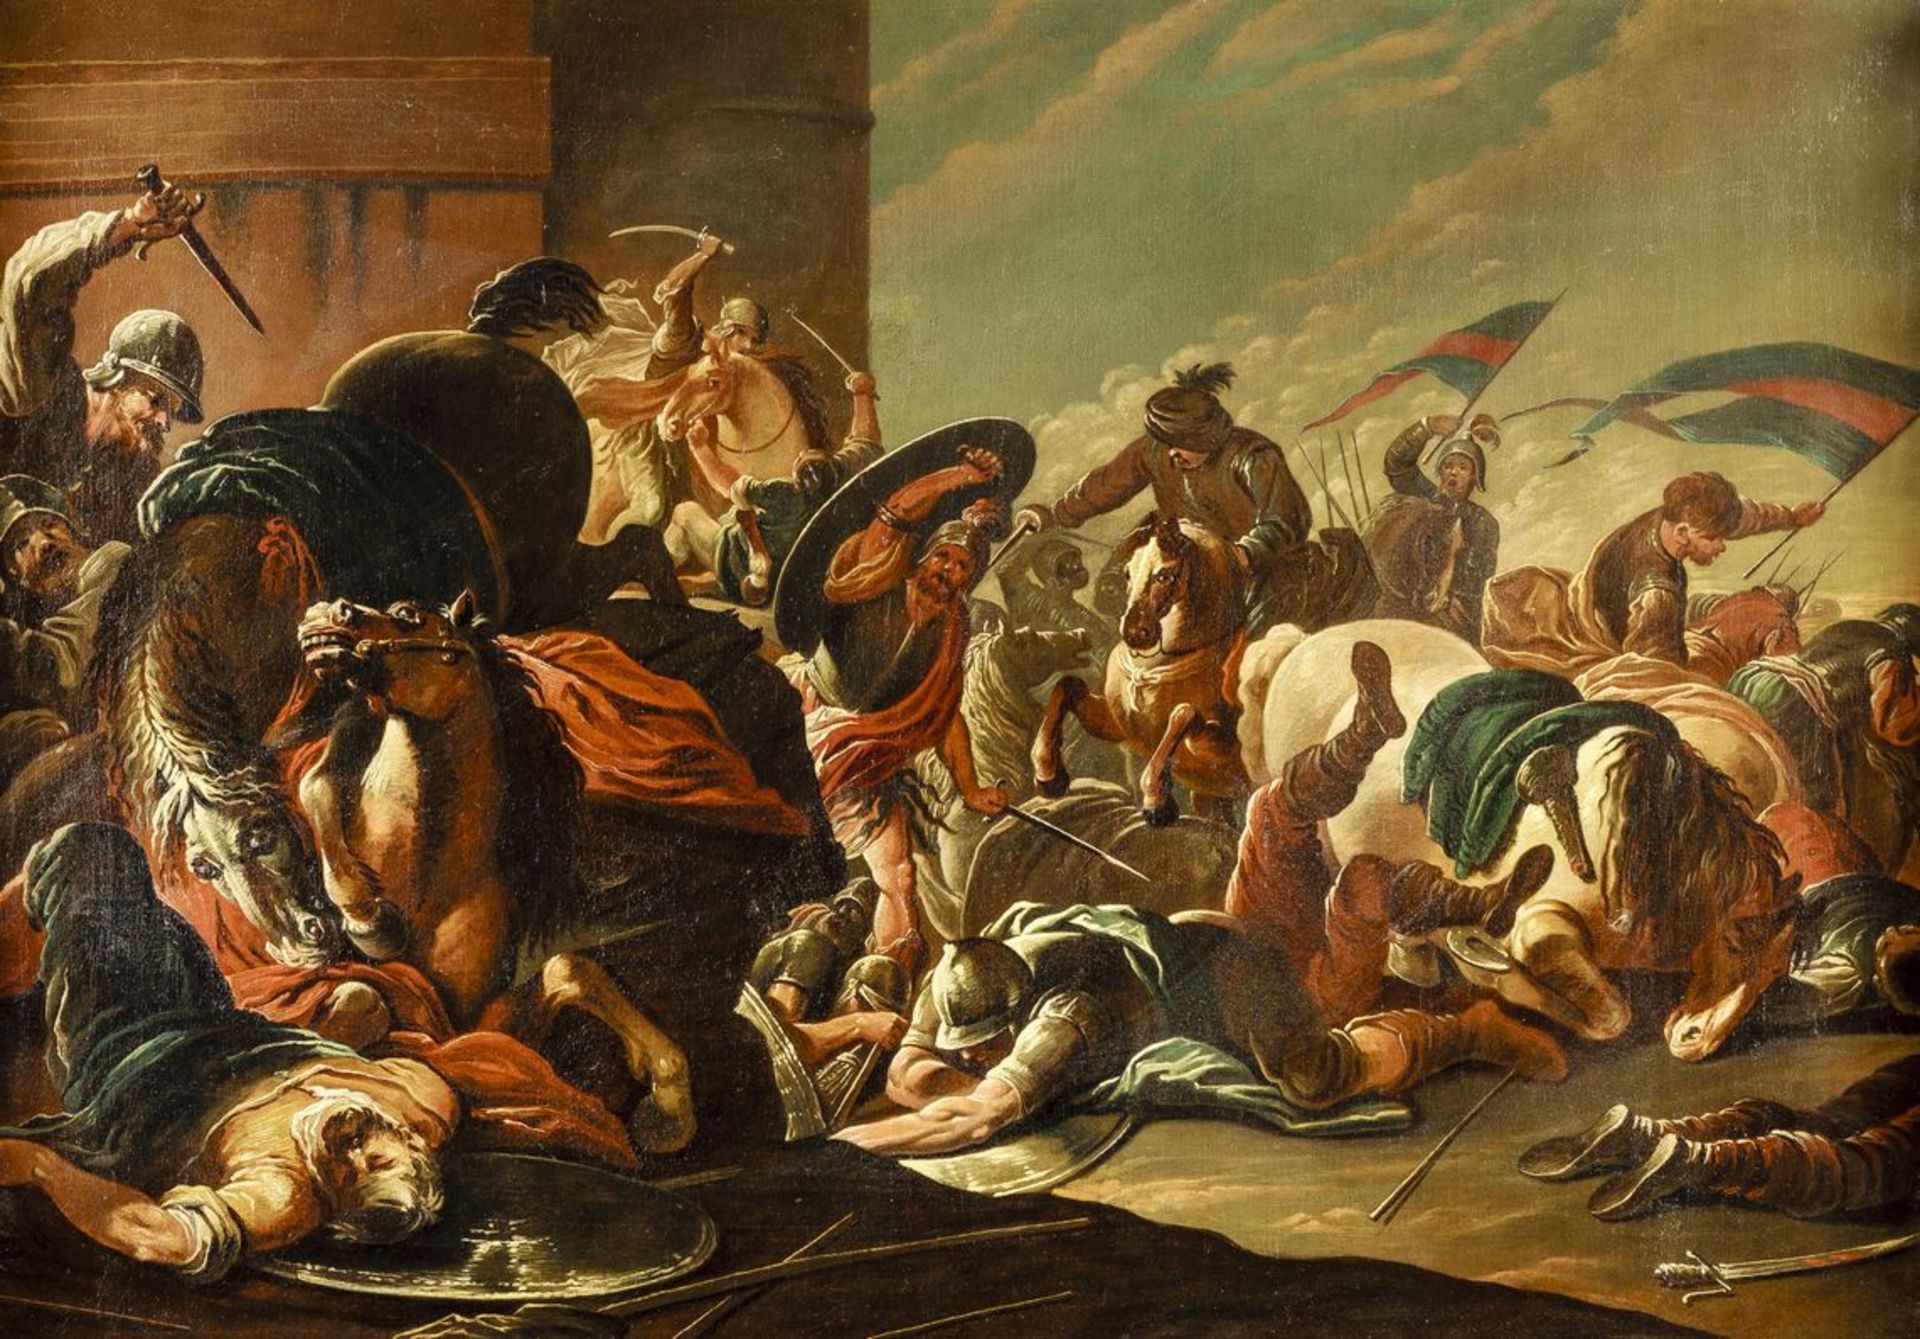 Rosa, SalvatorNach. 1615 Neapel - 1673 Rom. Öl/Lw. Heroische Schlachtenszene. (Rest., Craquelé). Auf